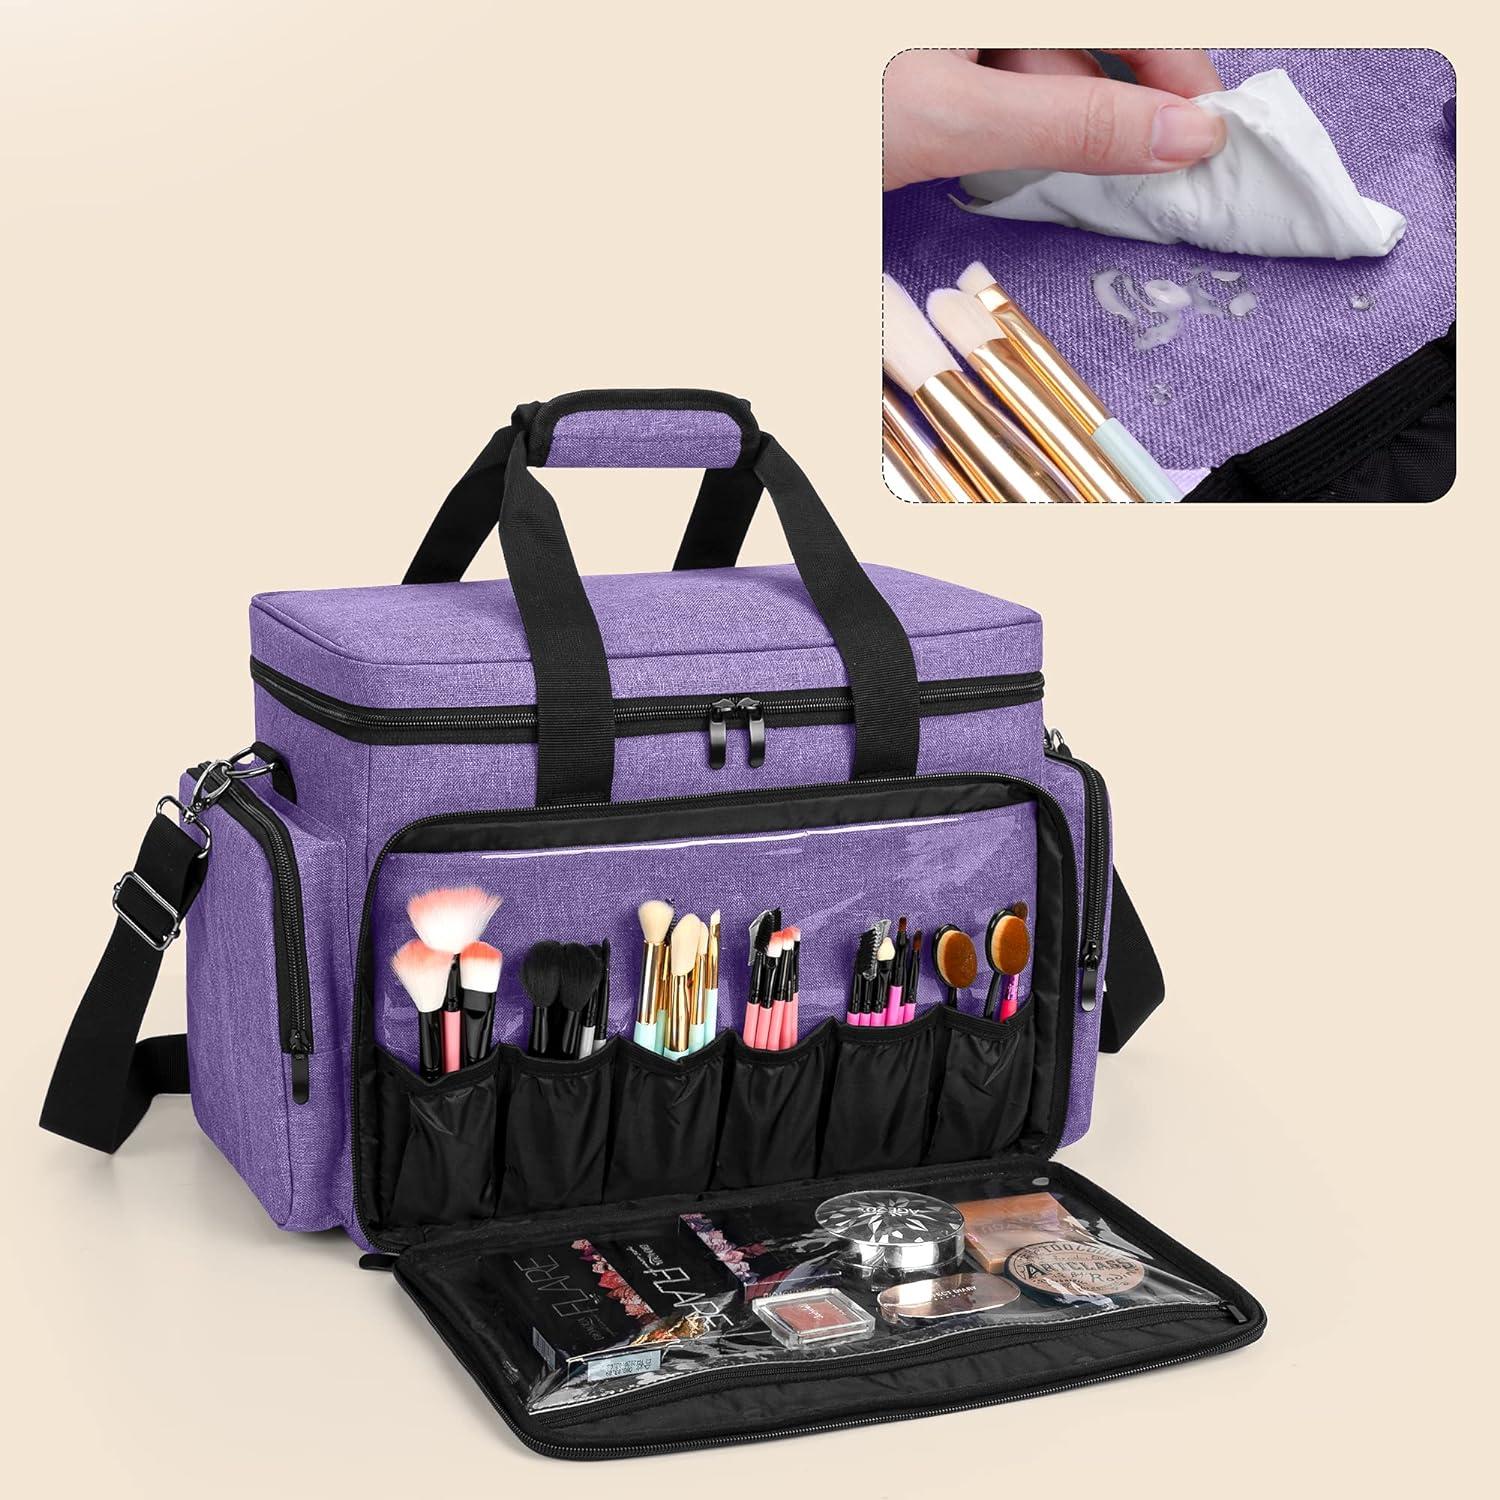 Buy Customized Pink Mini Makeup Kit Bag Online in Chennai